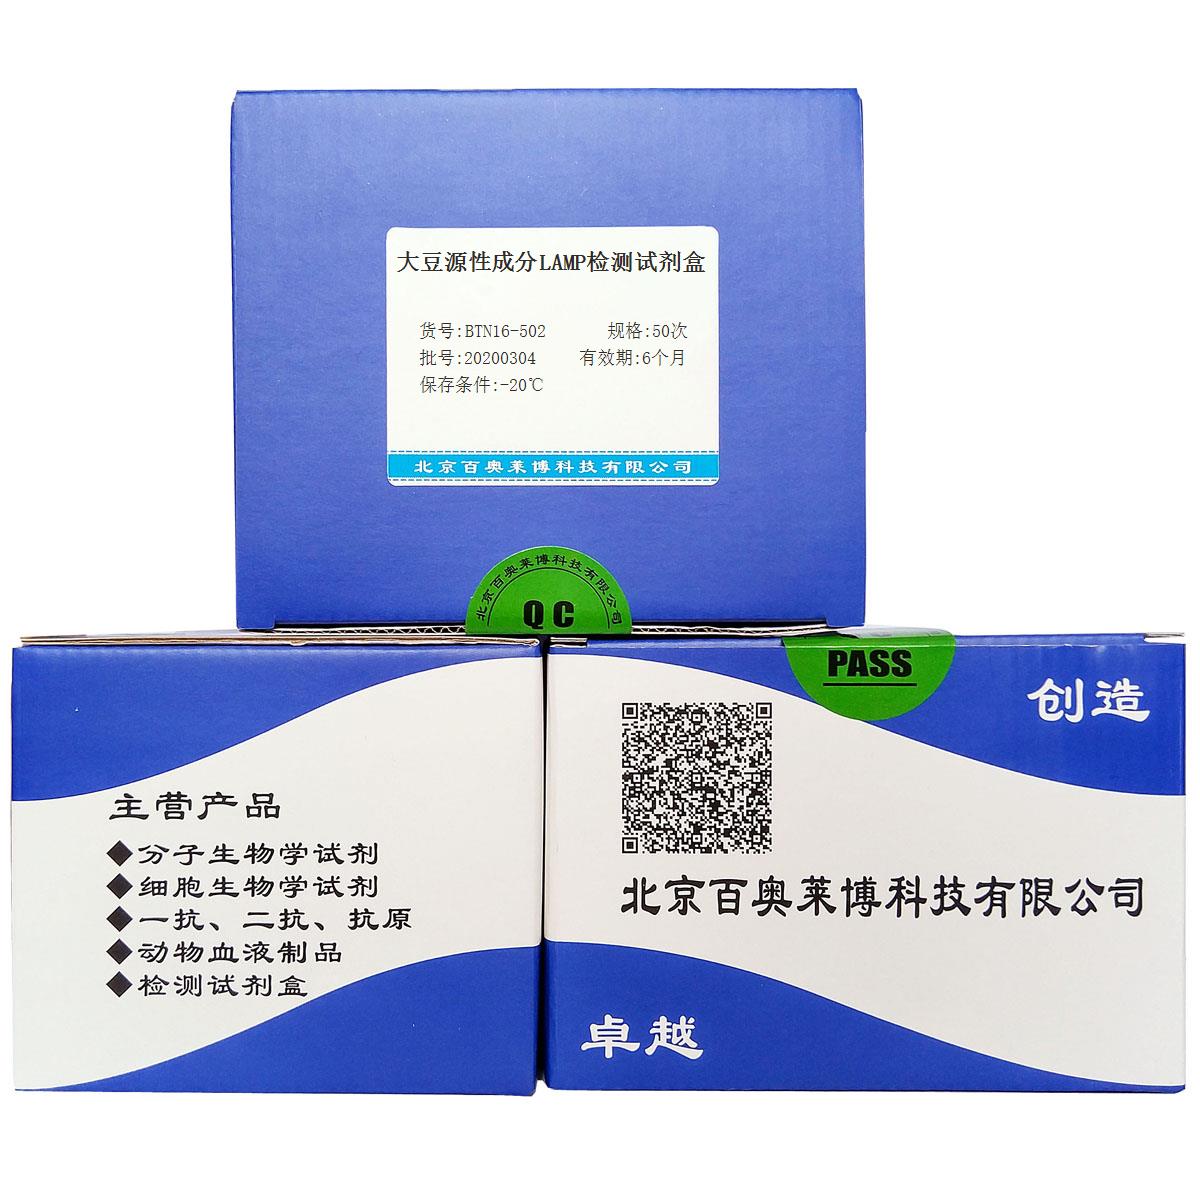 大豆源性成分LAMP检测试剂盒北京品牌